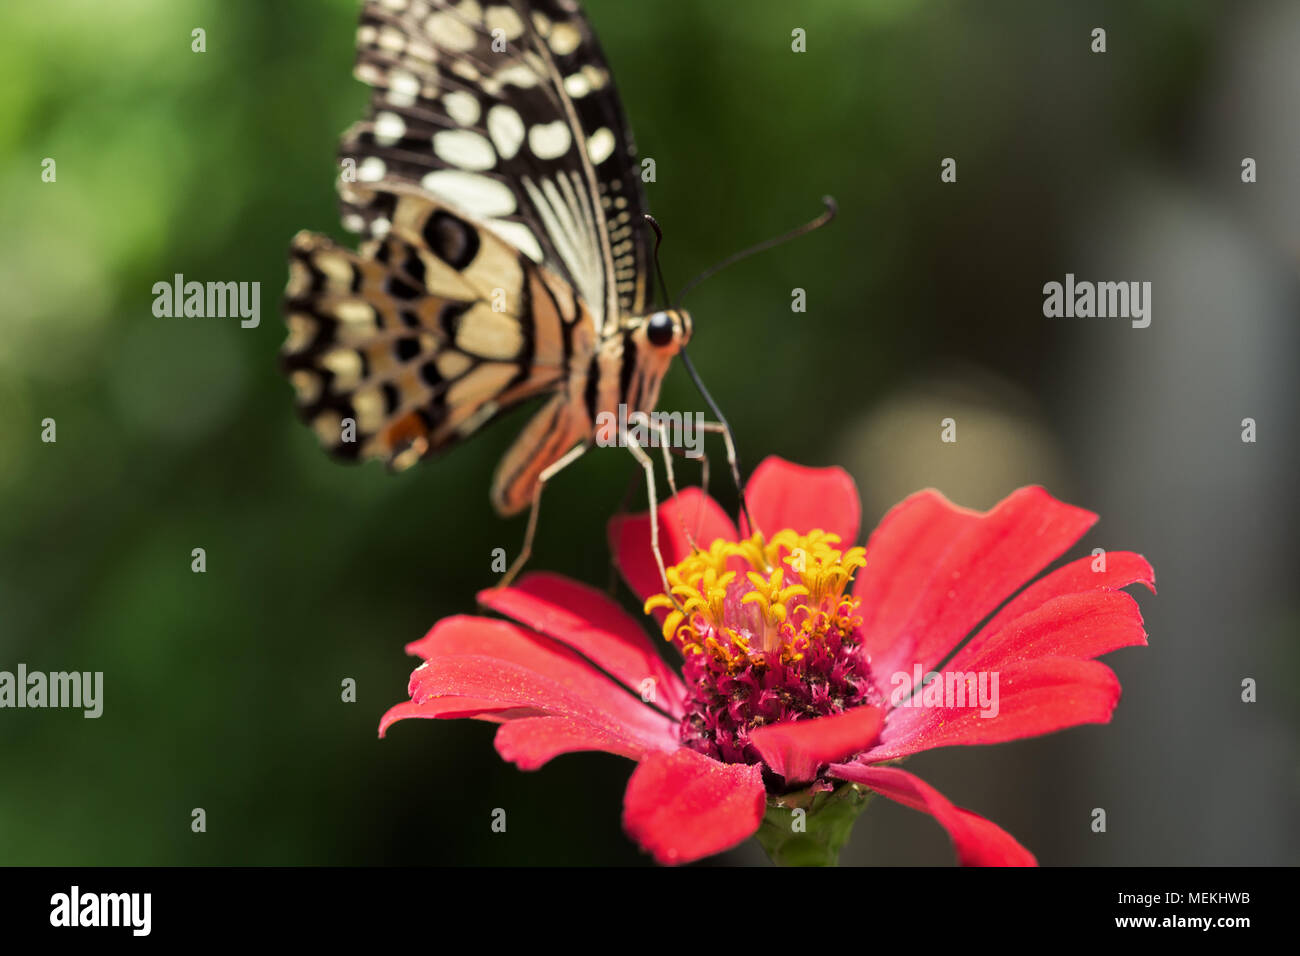 Papilio demoleus farfalla o a coda di rondine Butterfly, calce a coda di rondine e la bandiera a scacchi a coda di rondine. Close-up foto di farfalla di alimentazione su Zinnia Foto Stock